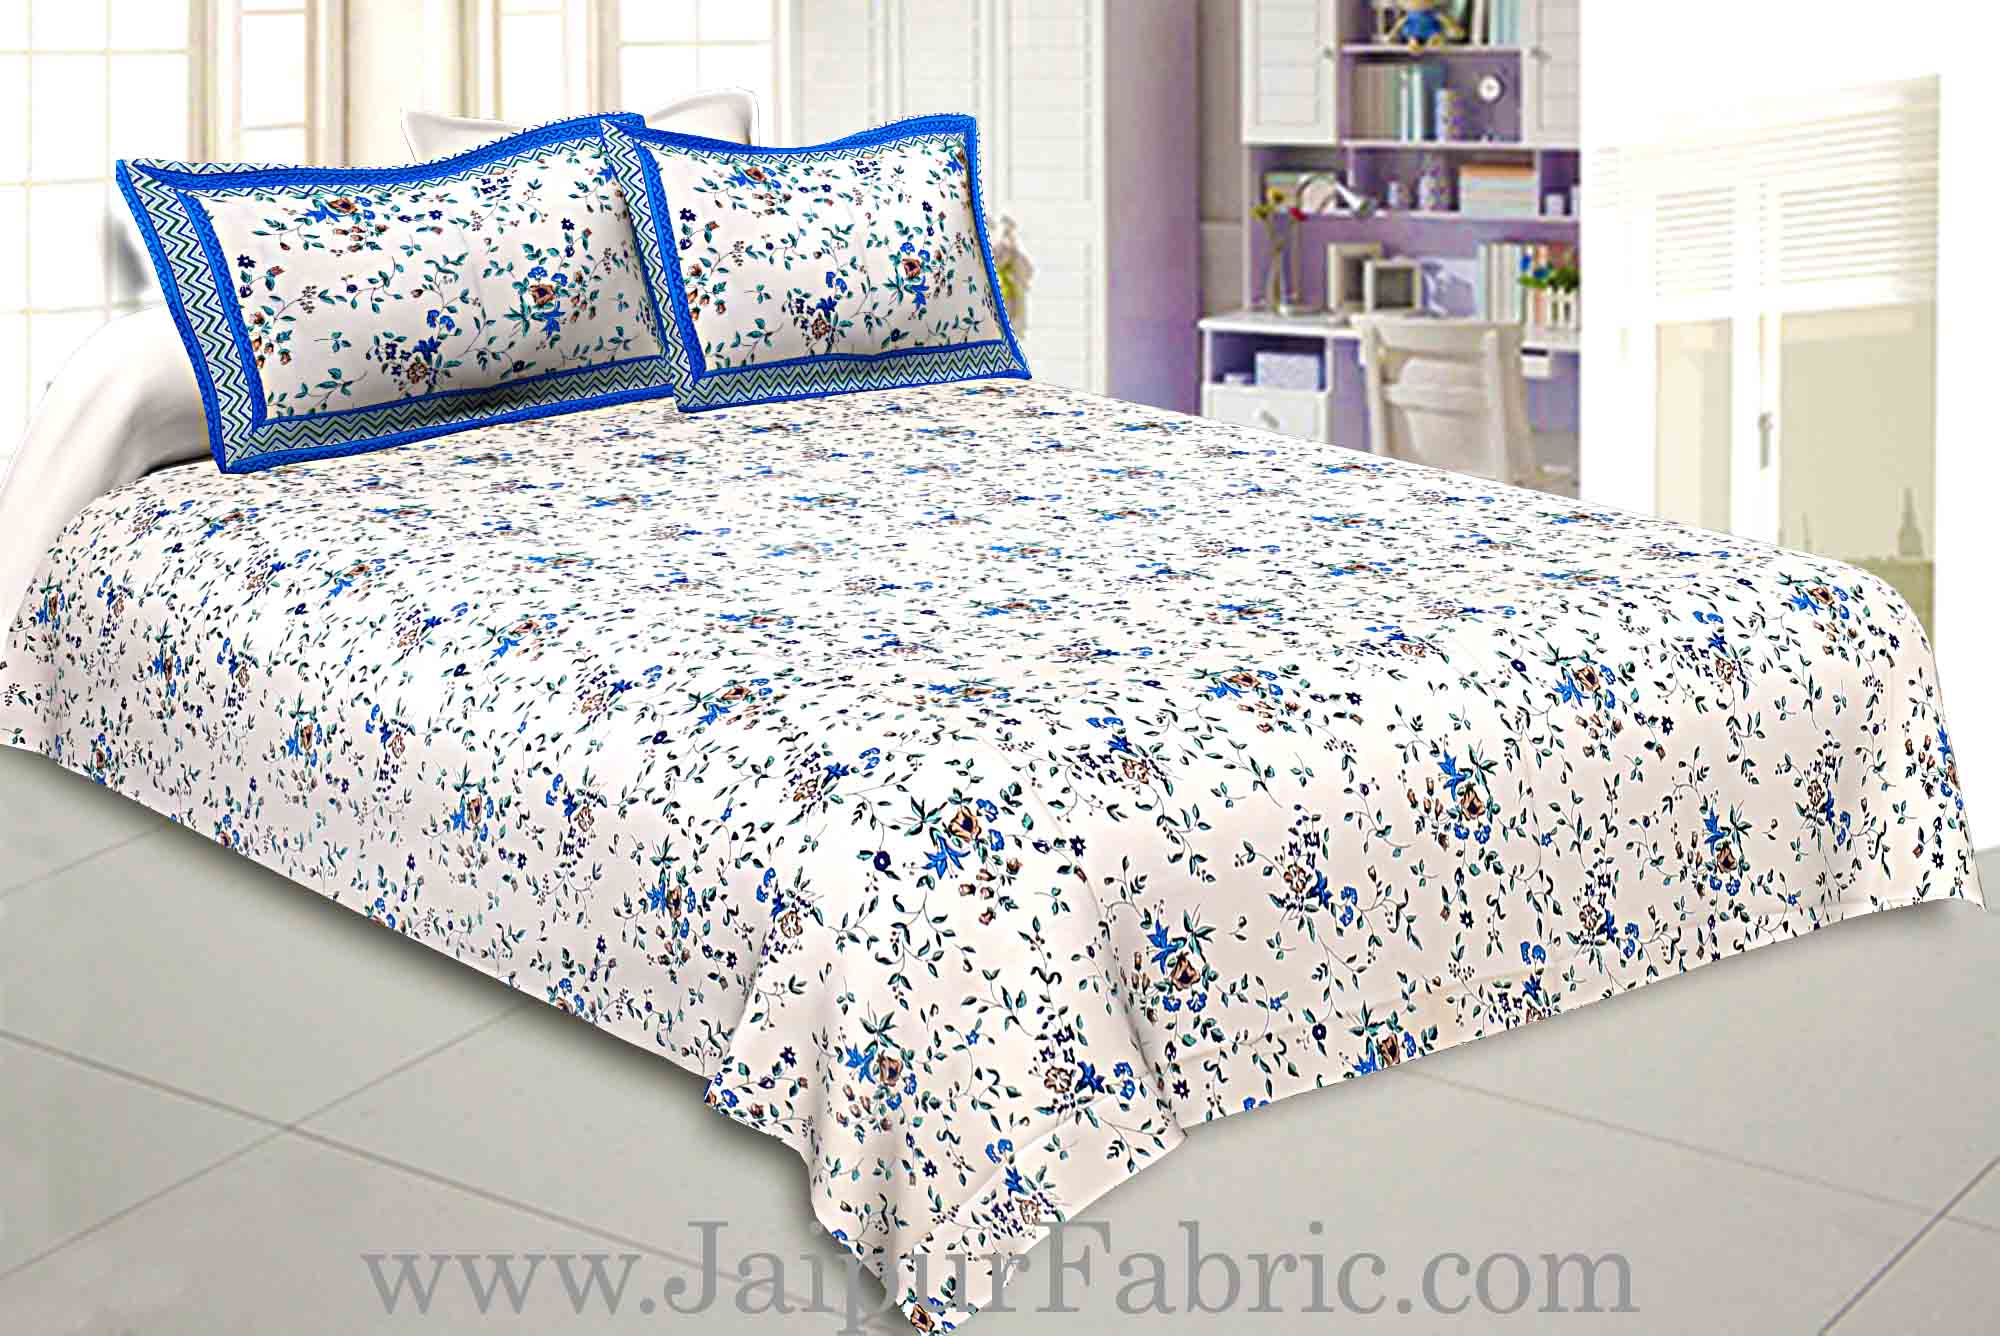 Comforter Bedsheet Combo